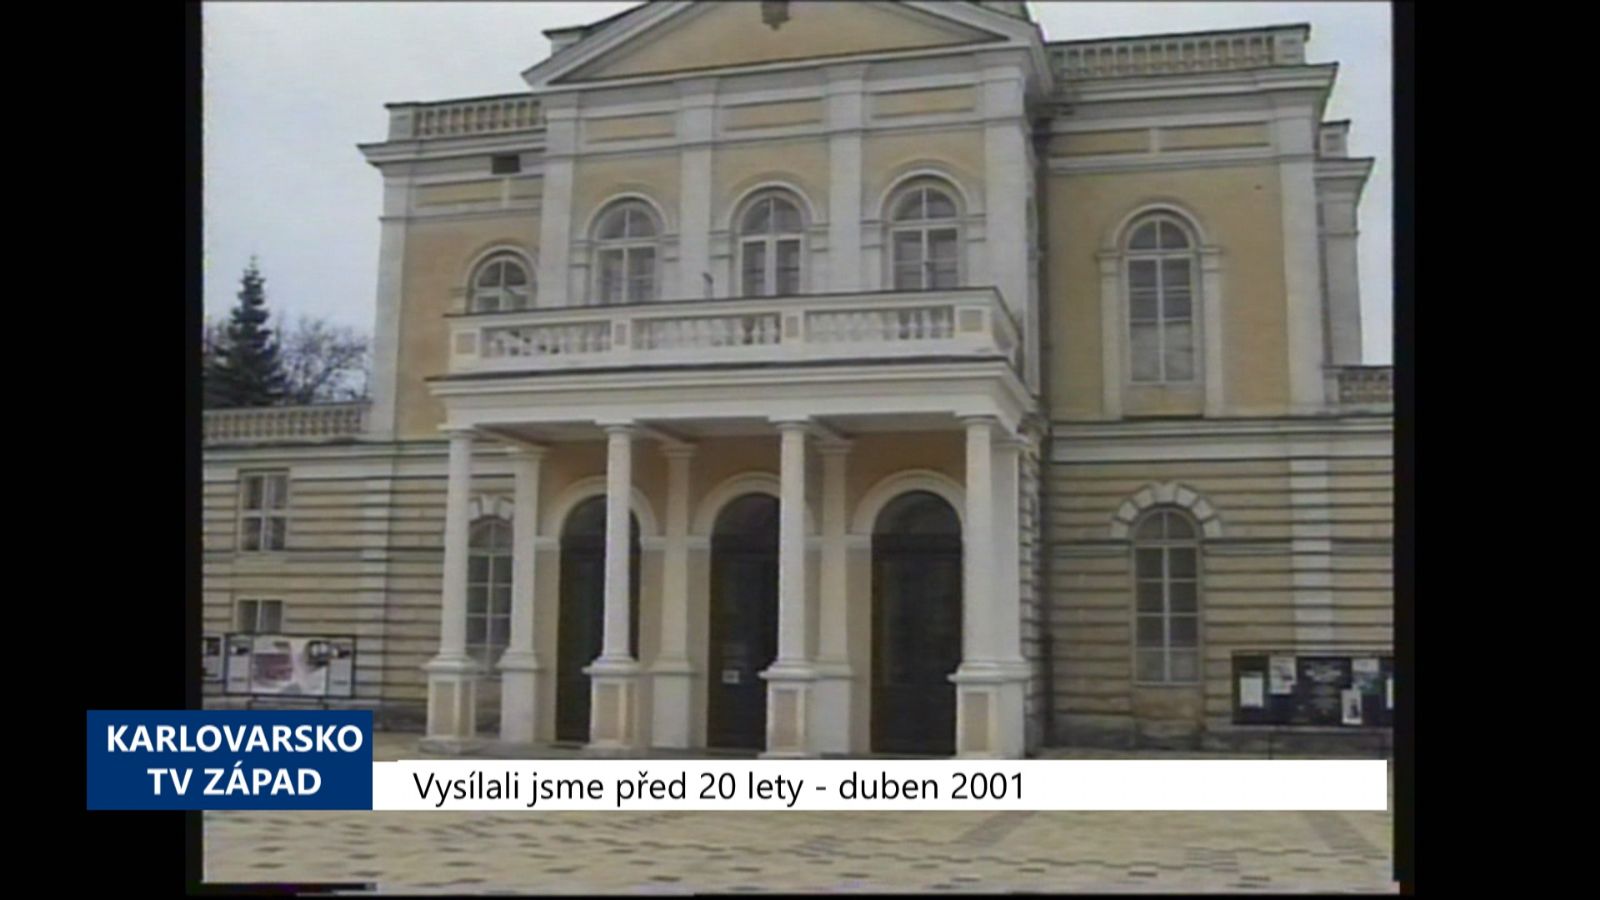 2001 – Cheb: Divadlo získá novou fasádu (TV Západ)